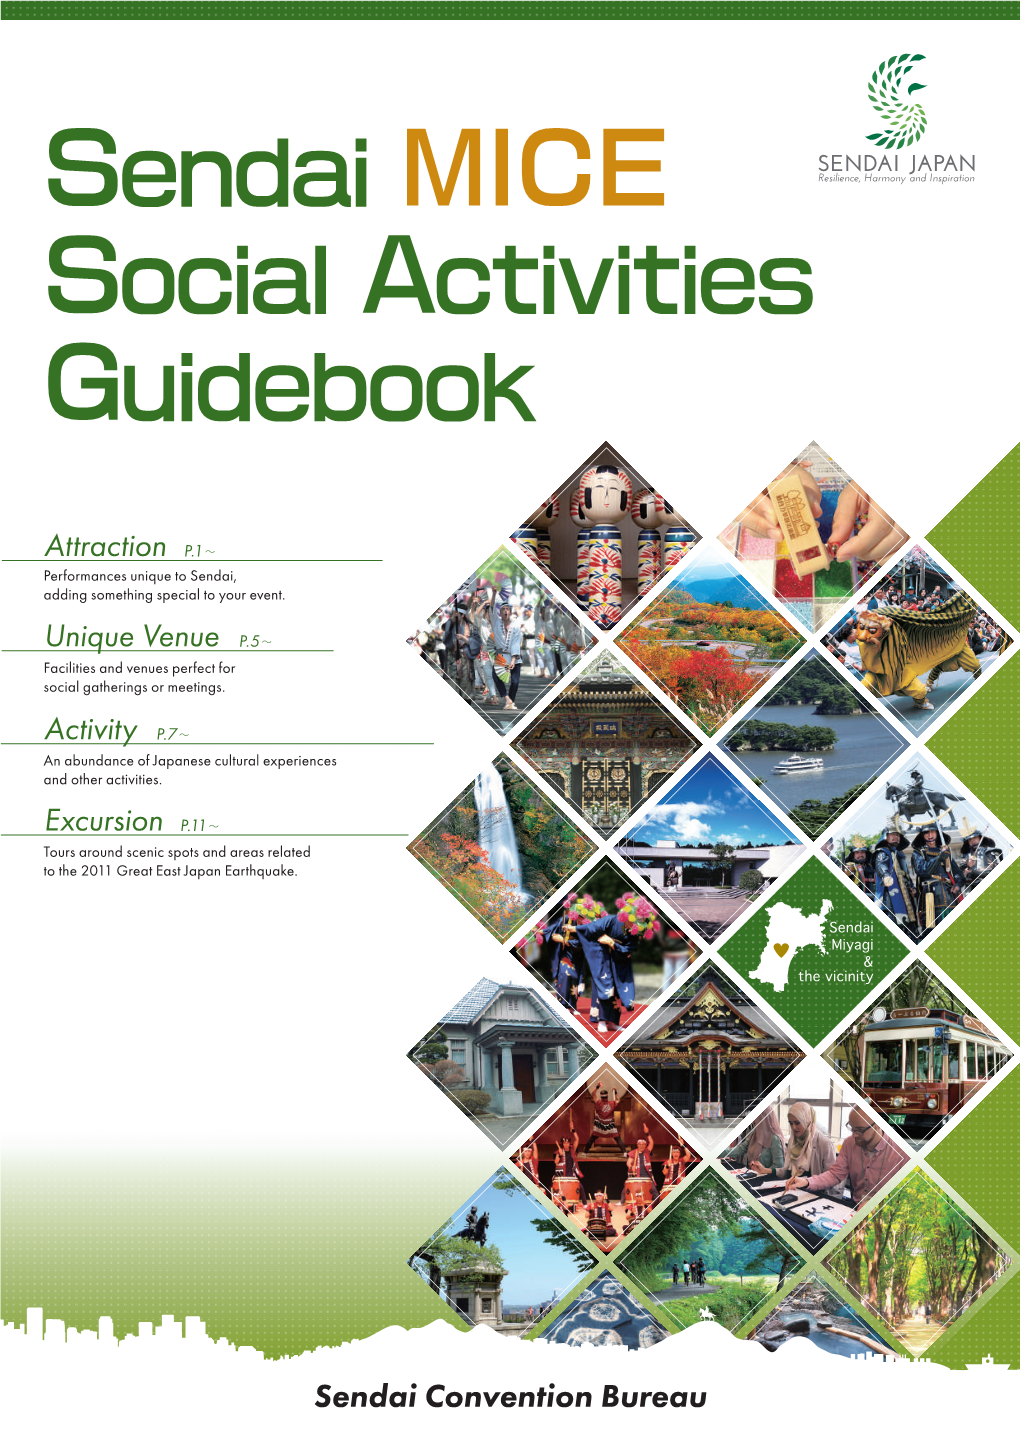 Sendai MICE Social Activities Guidebook